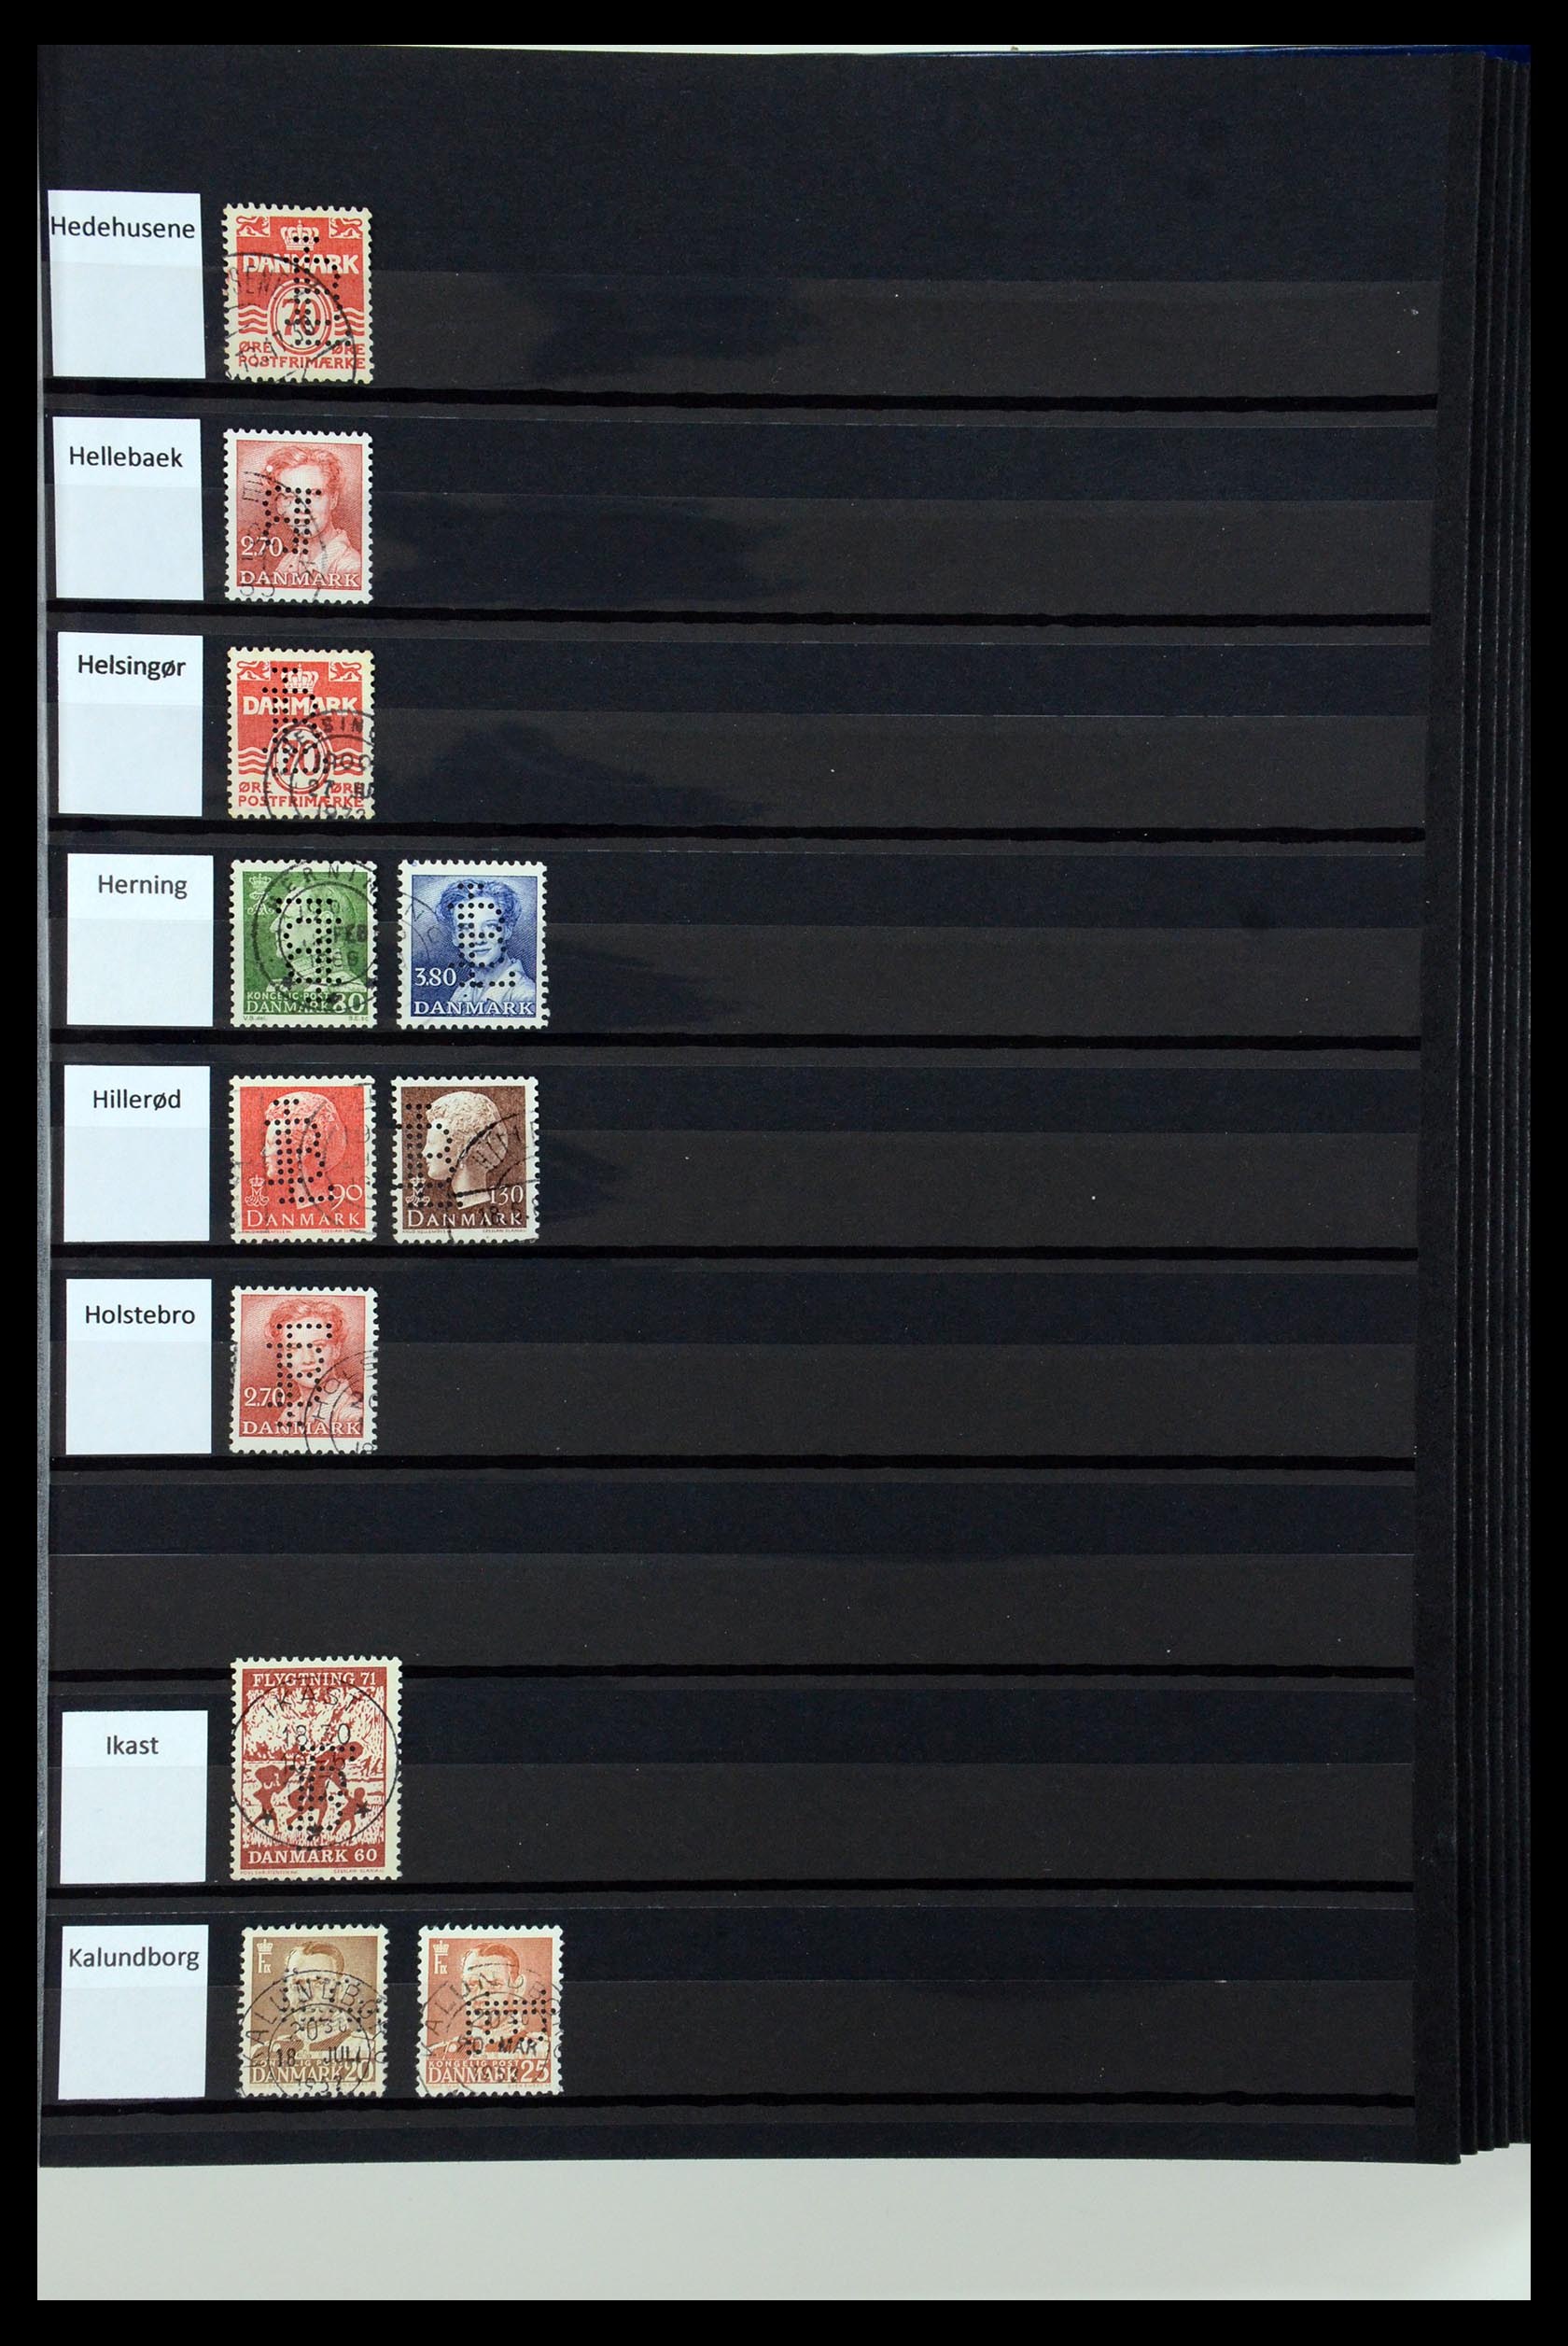 36396 090 - Postzegelverzameling 36396 Denemarken perfins.